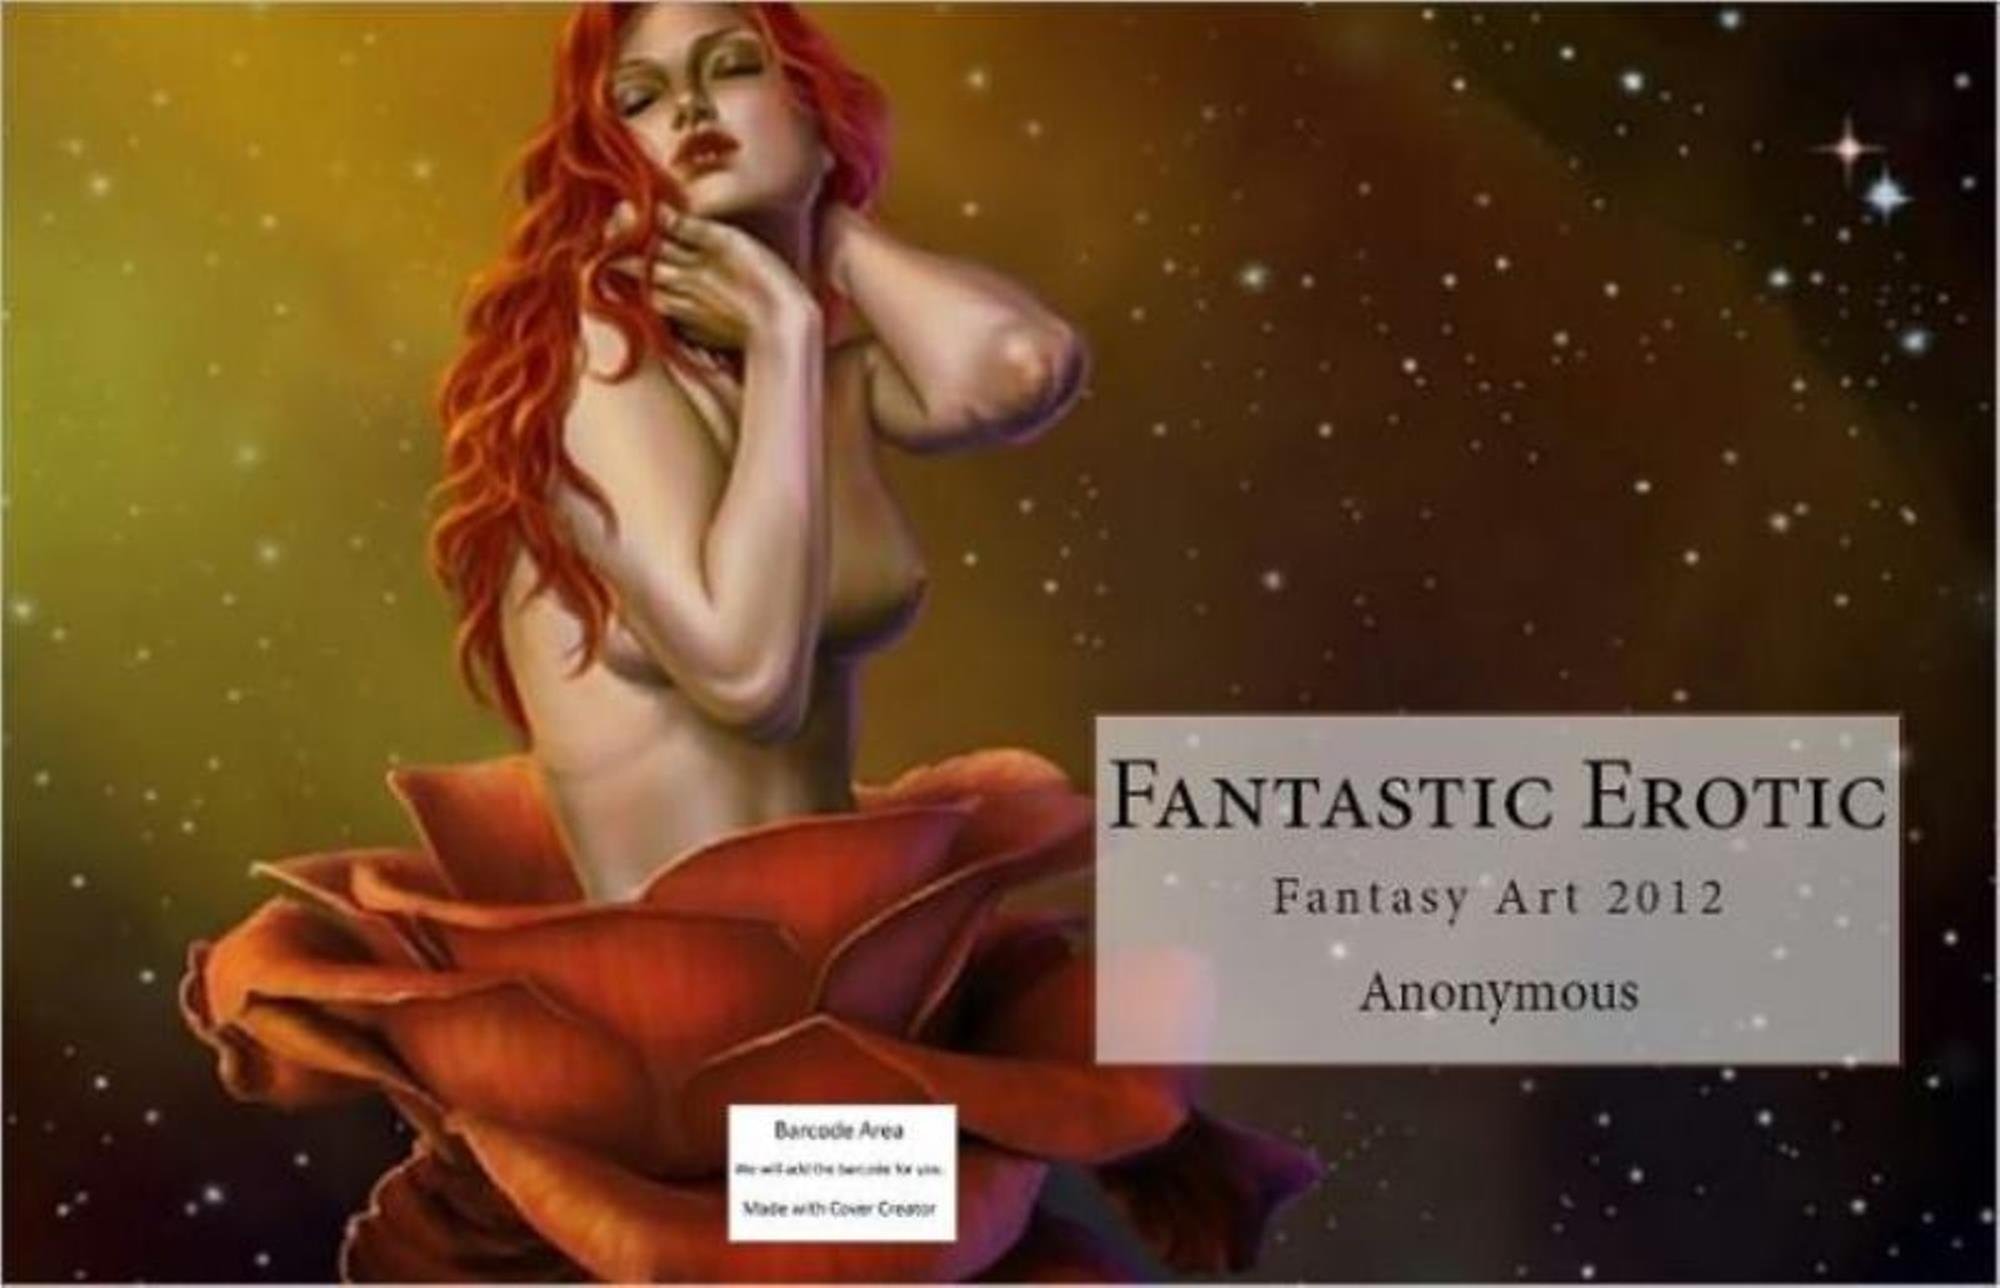 clarise saeva add photo erotic fantasy art